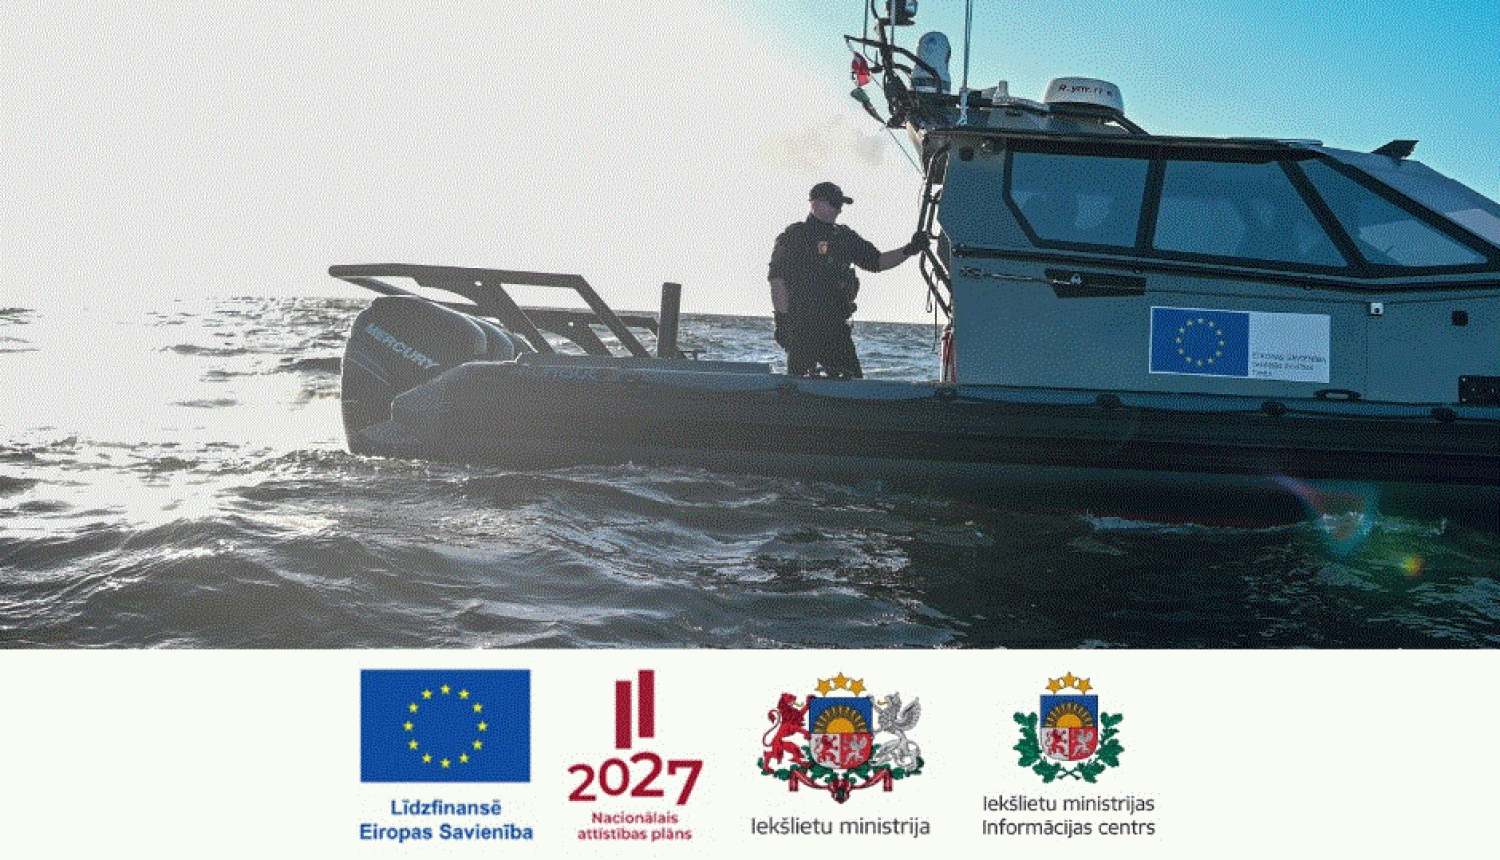 Fotoattēls, kurā redzams Latvijas robežsargs uz jūrā esoša Valsts robežsardzes kutera klāja, kā arī Eiropas Savienības līdzfinansējuma, Nacionālā attīstības plāna, Latvijas Republikas Iekšlietu ministrijas un Iekšlietu ministrijas Informācijas centra logotipi